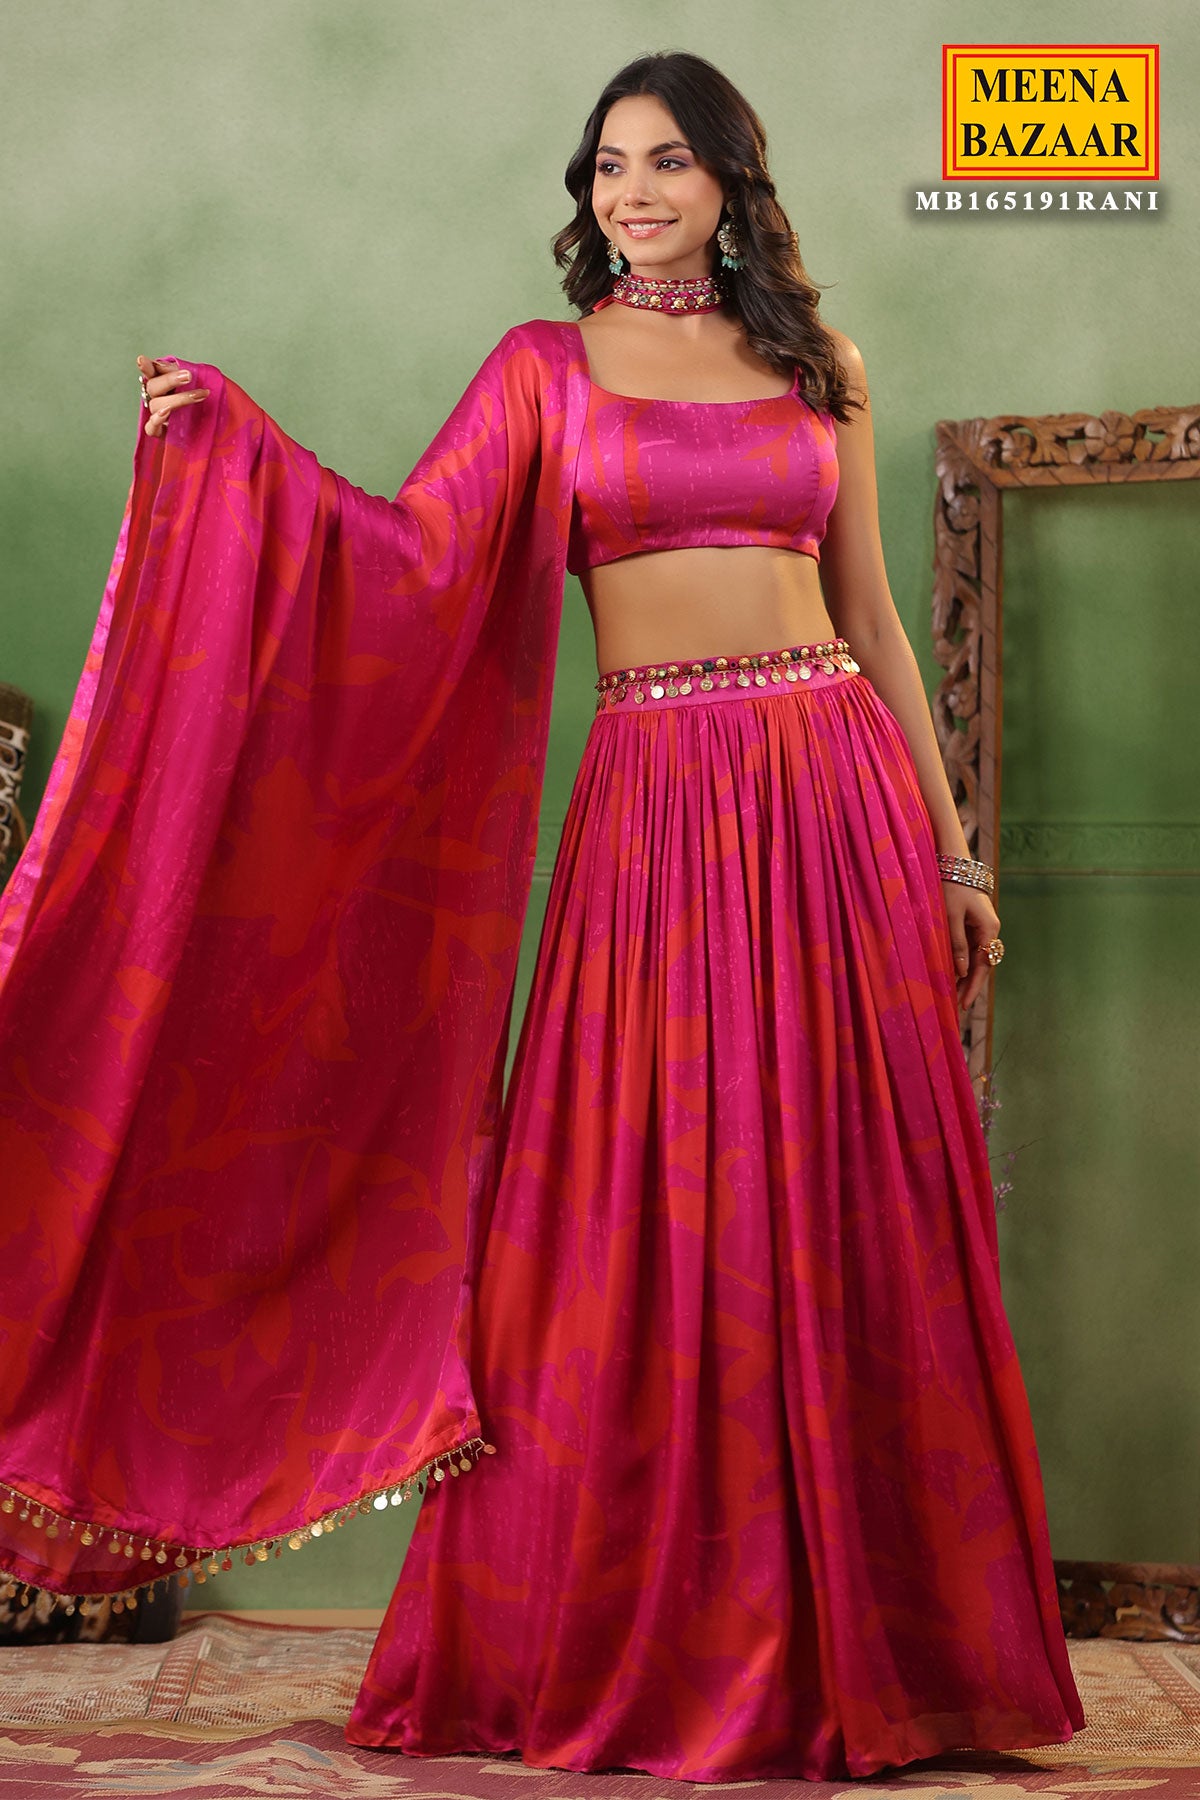 Meena Bazaar Dresses - Buy Meena Bazaar Dresses online in India